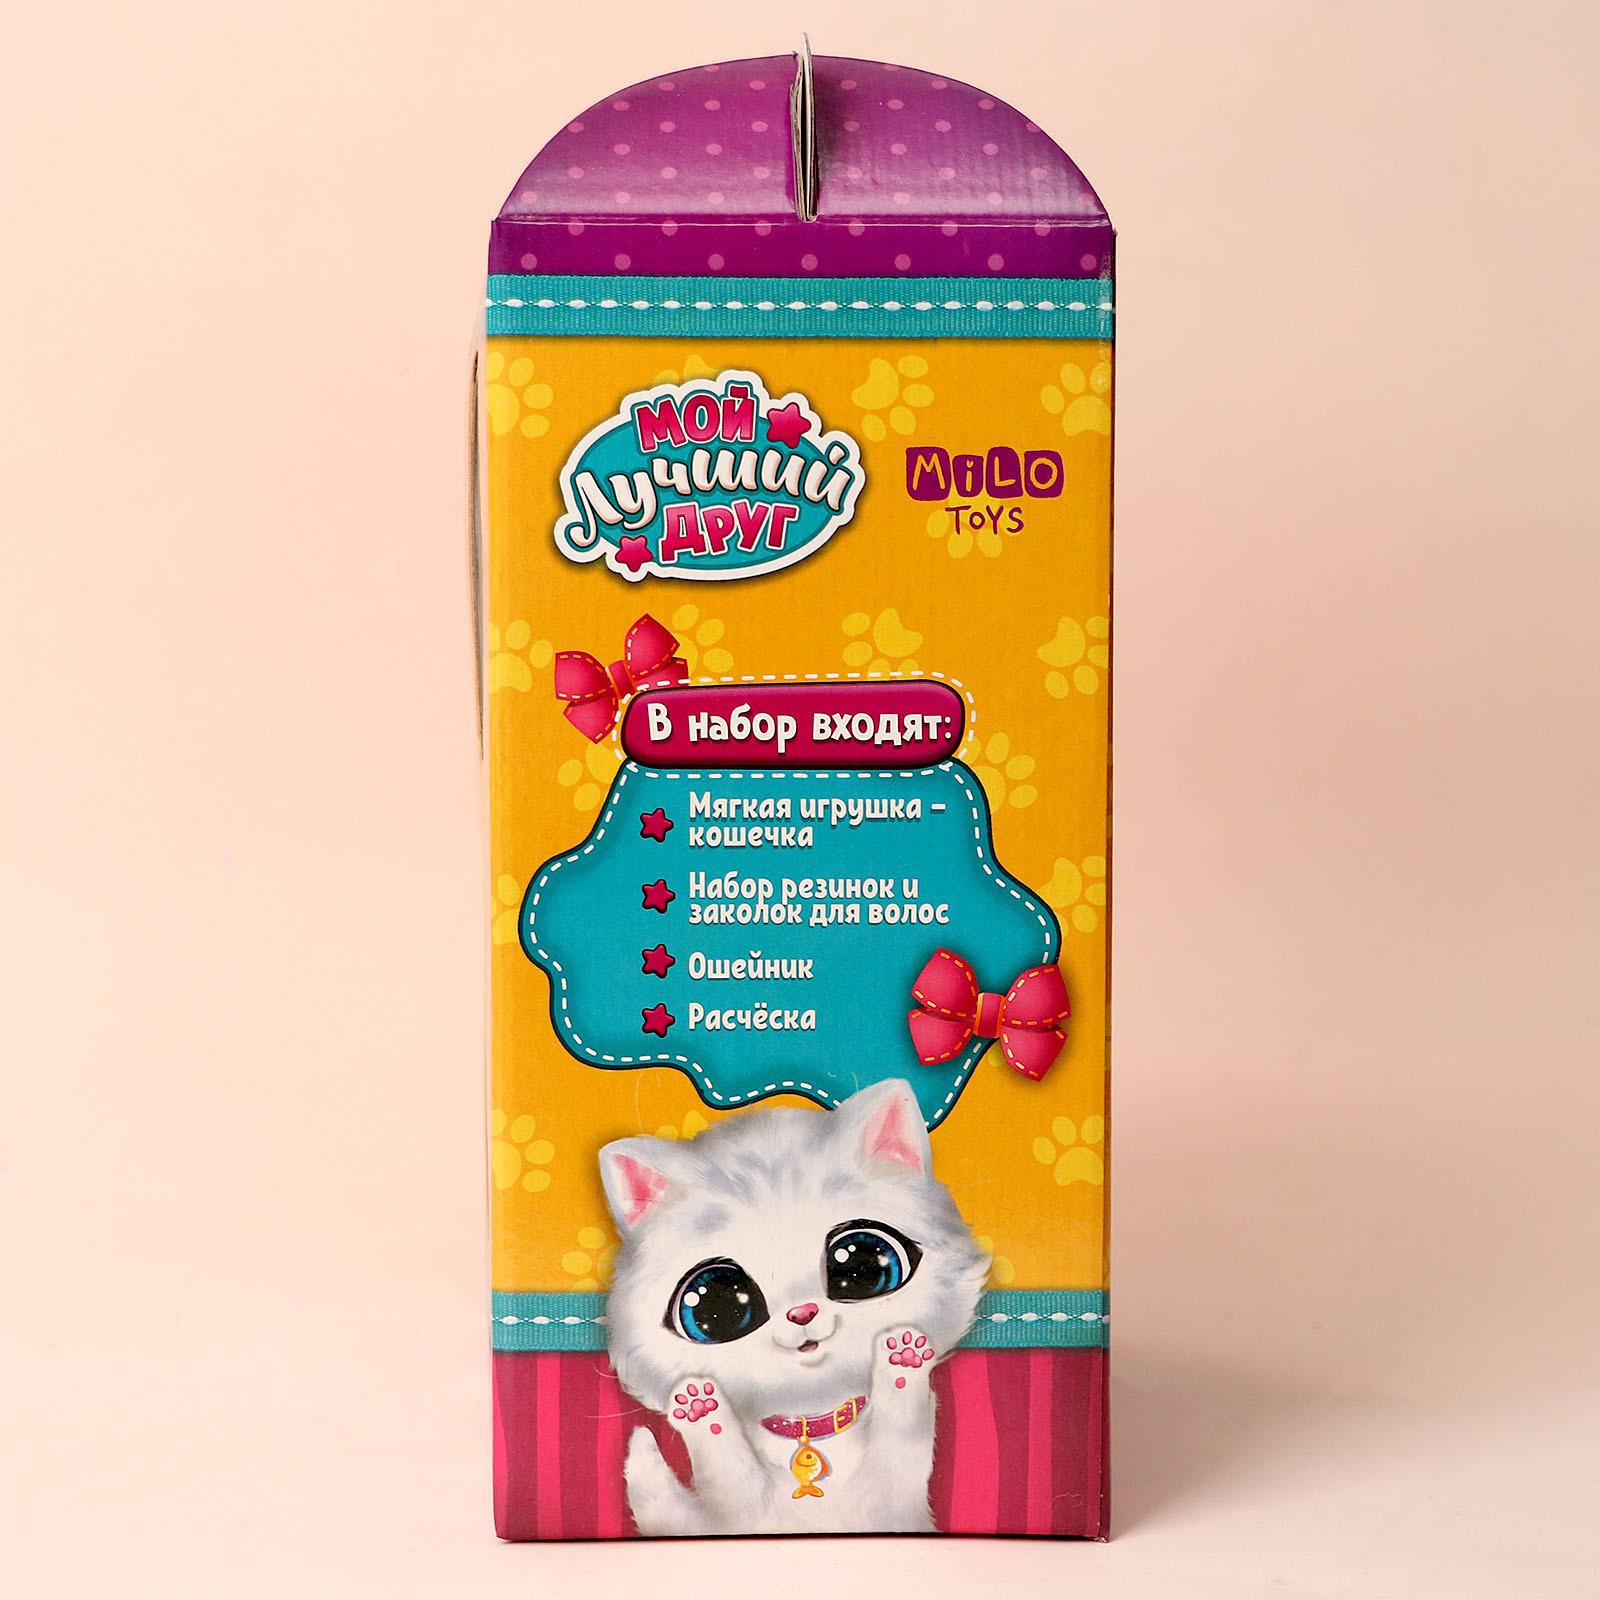 Мягкая игрушка Milo Toys «Мой лучший друг» белый котик - фото 8